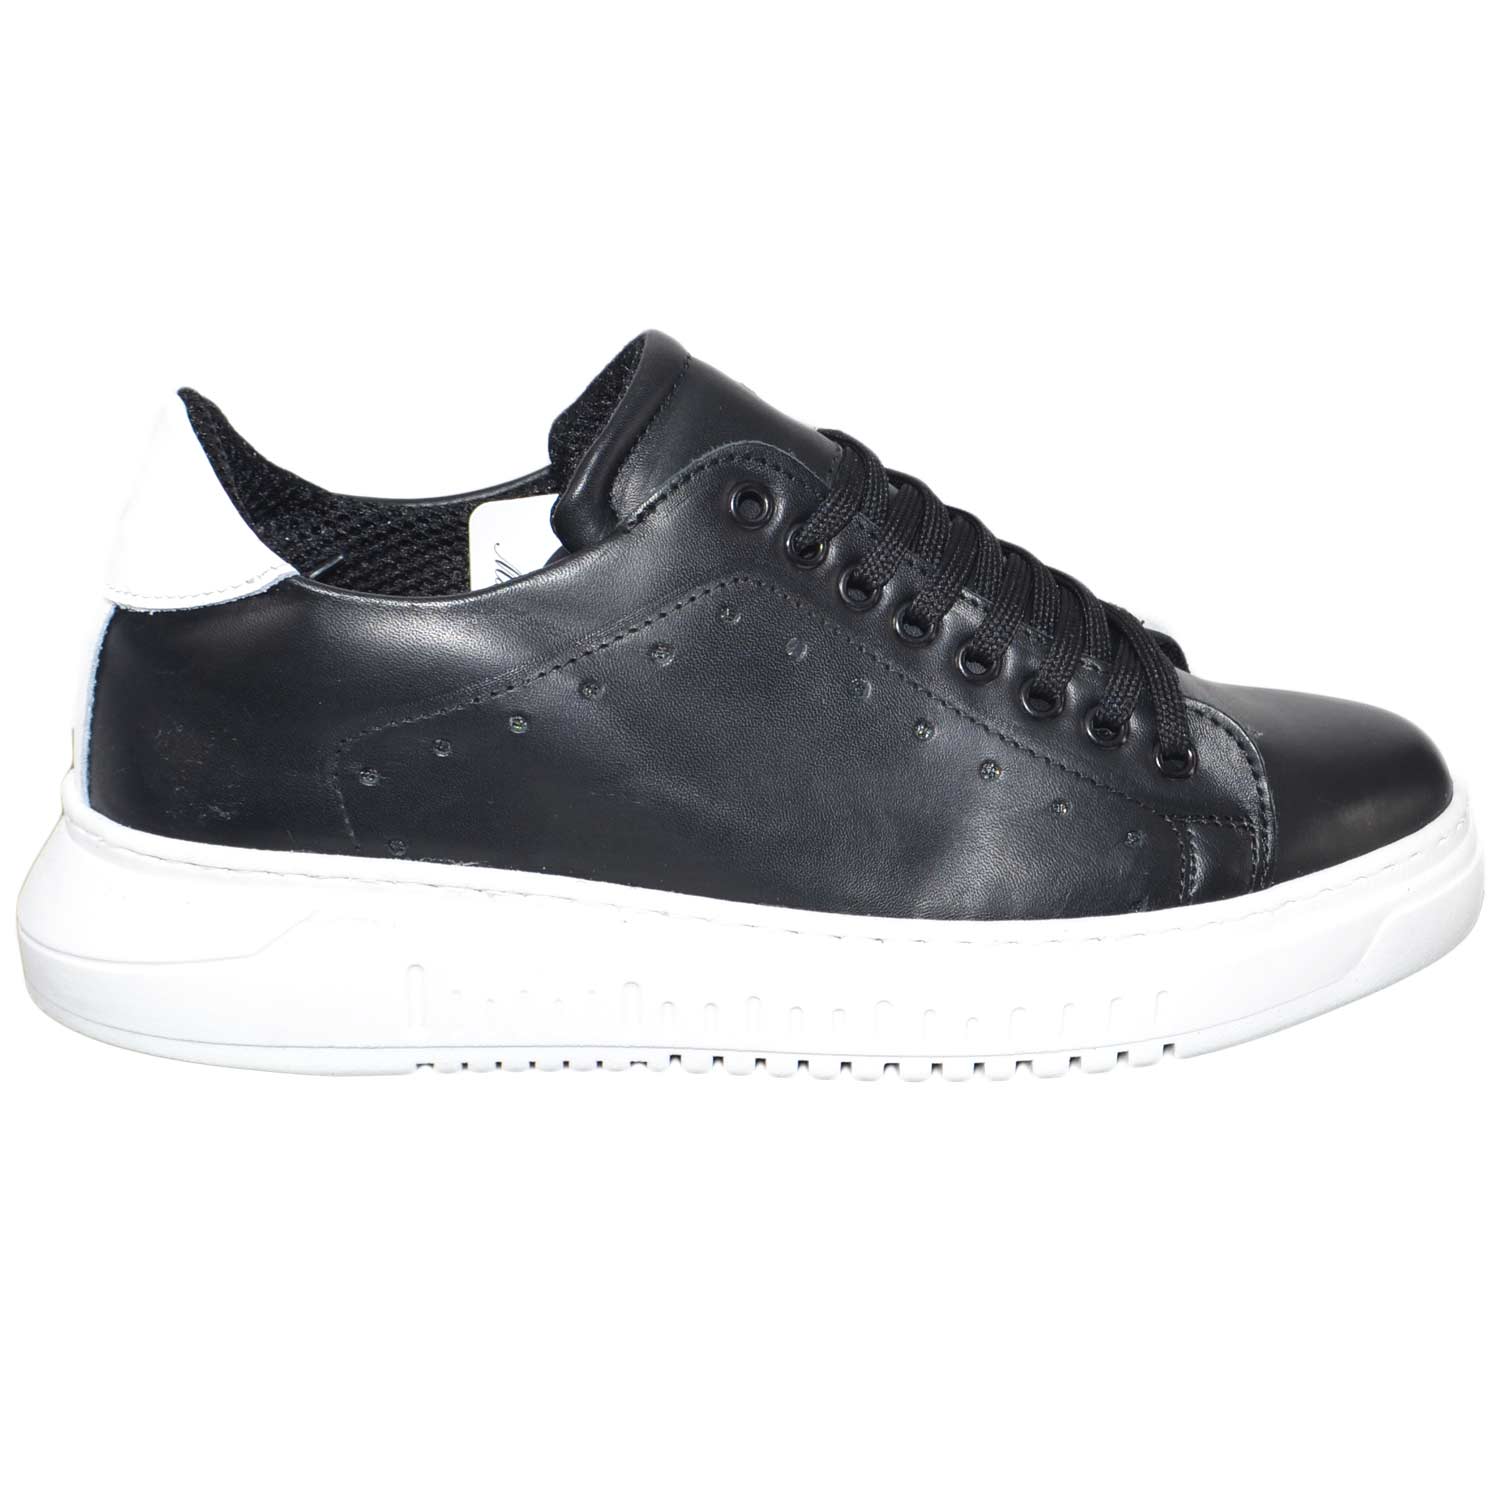 Sneakers bassa scarpe uomo nero fondo doppio army vera pelle nero  rifinimenti in | eBay